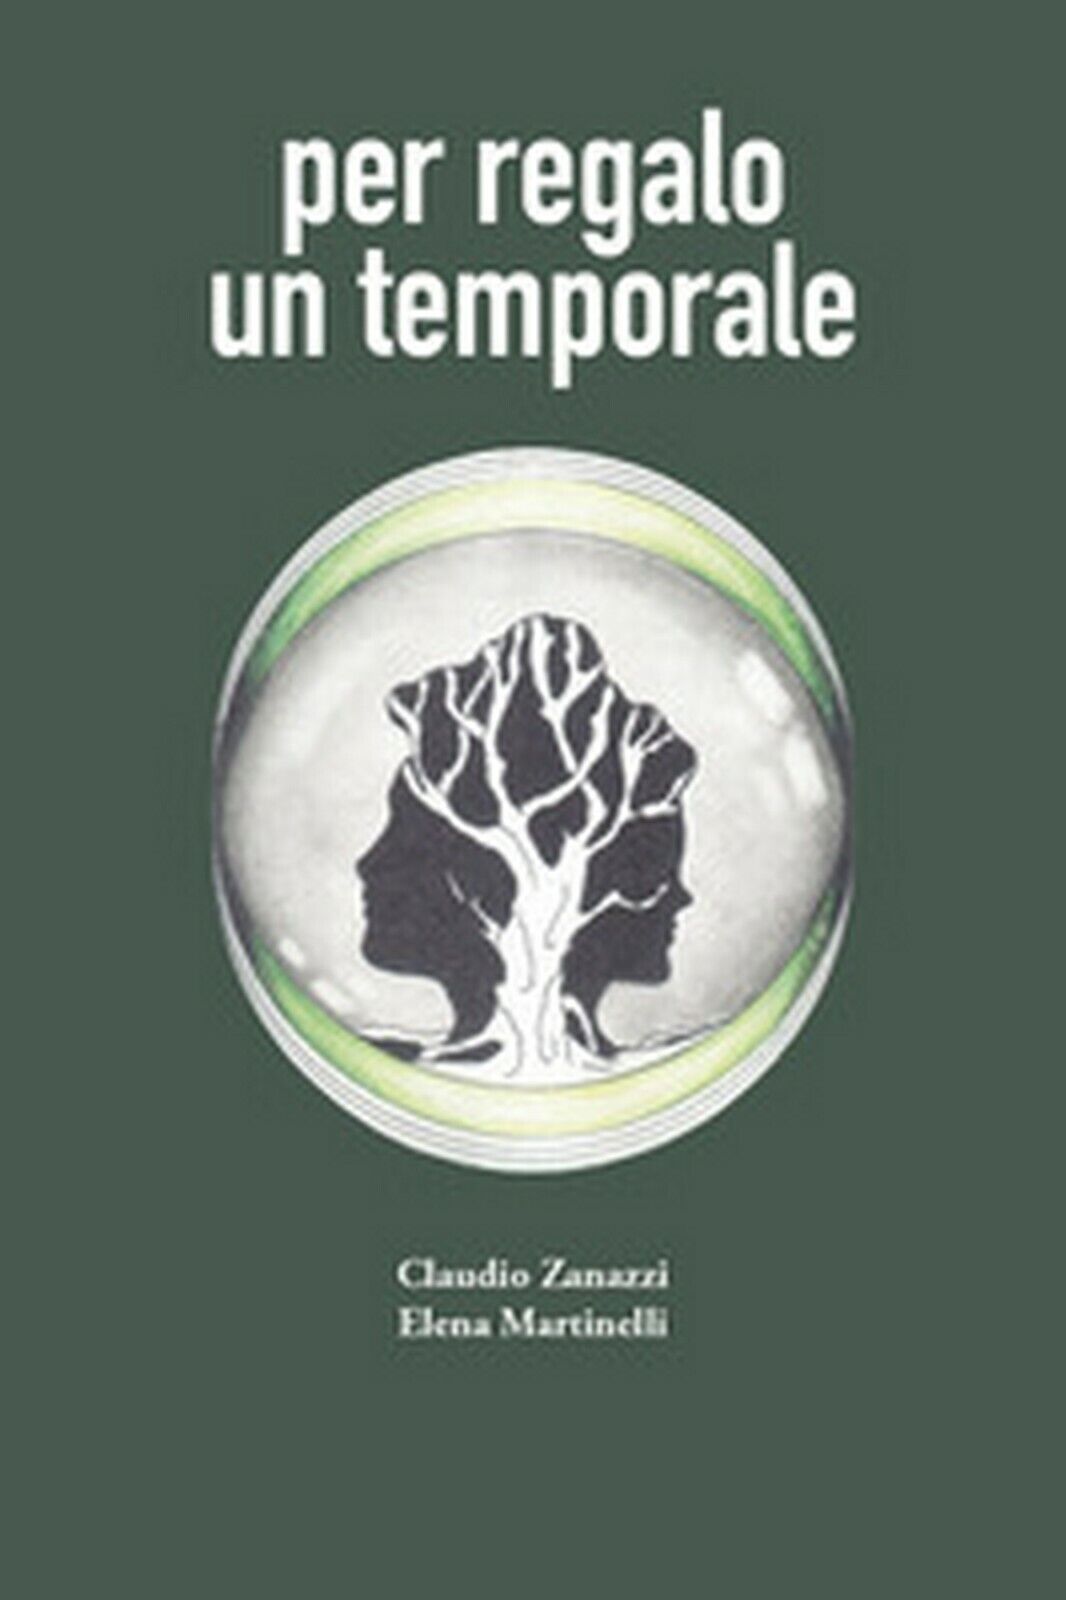 Per regalo un temporale  di Claudio Zanazzi, Elena Martinelli,  2017,  Universit libro usato